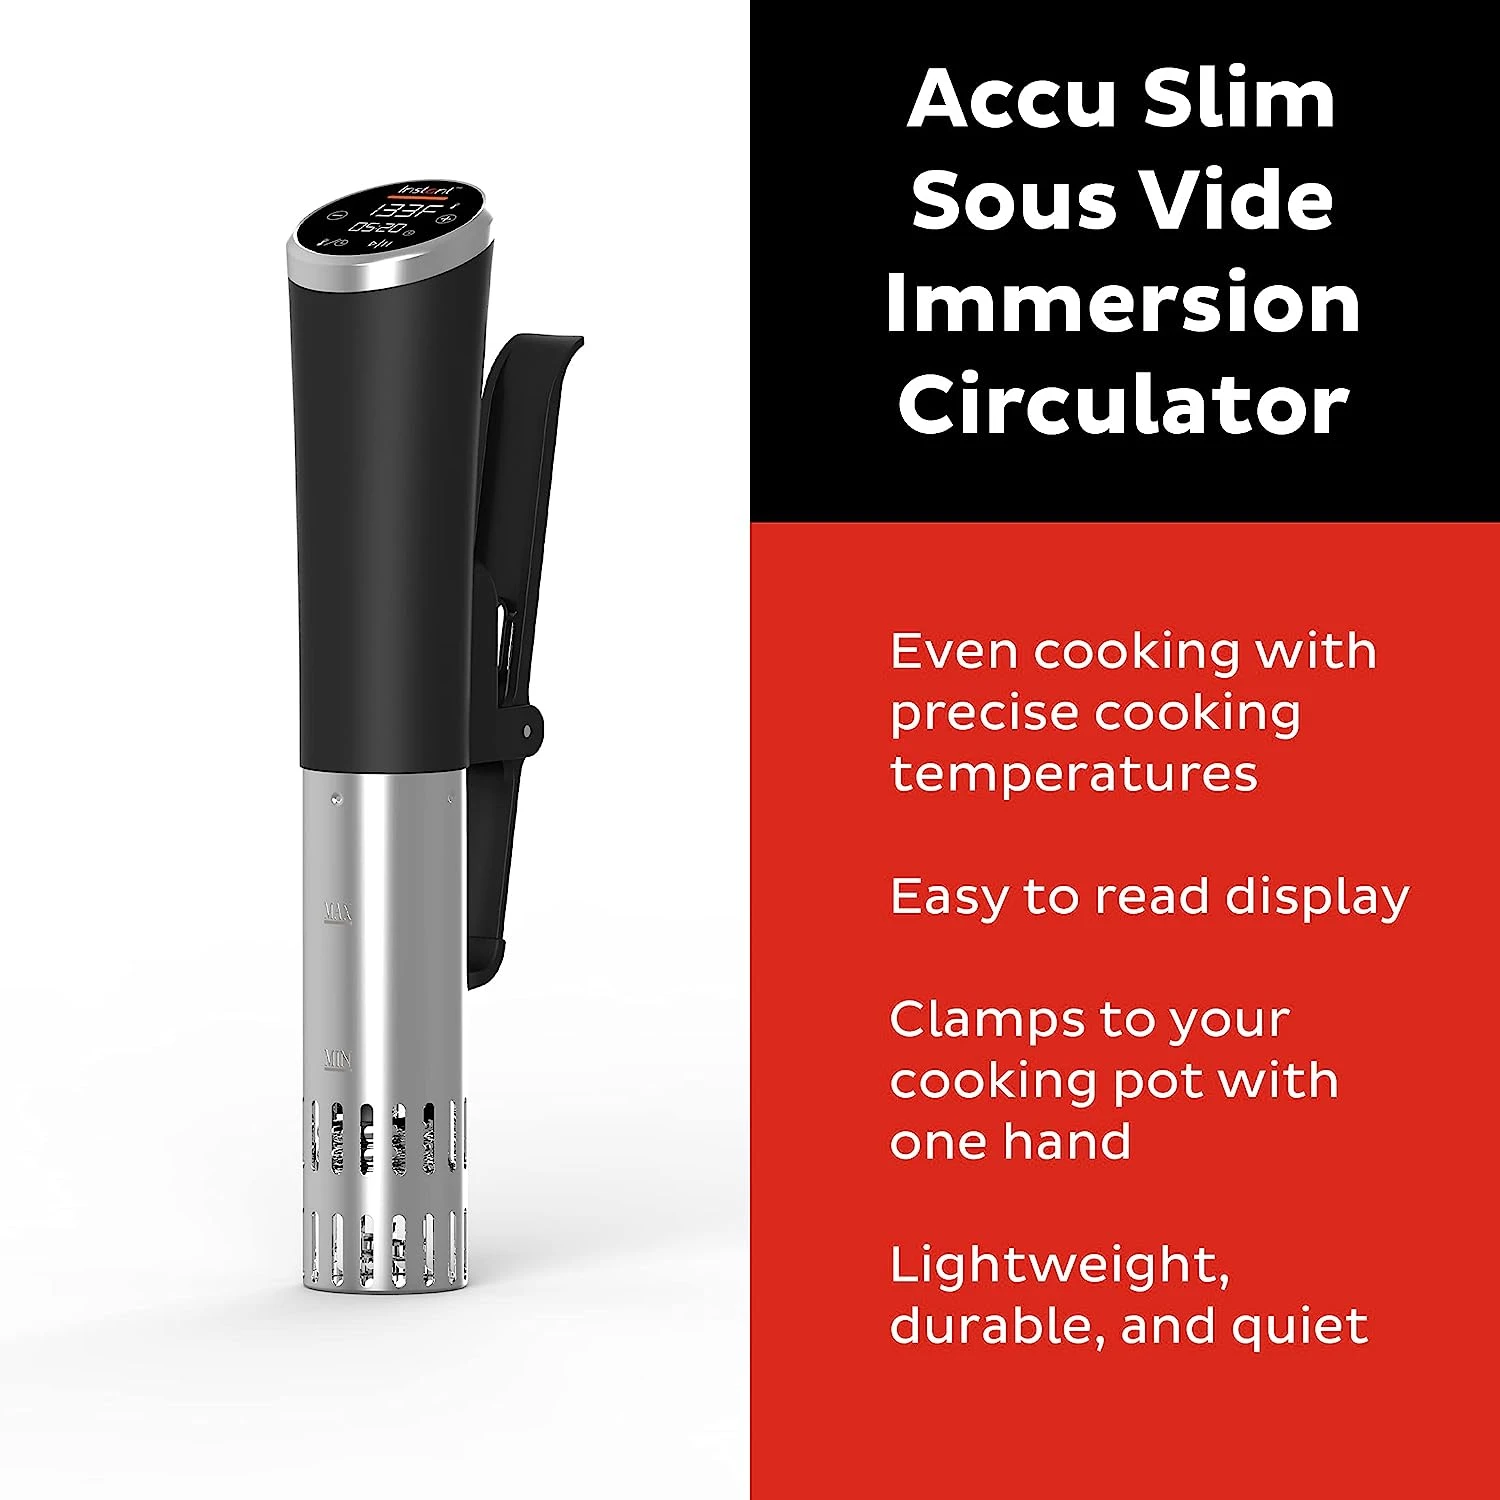 Прецизна печка Accu Slim Sous Vide, с погружным циркулятором, сверхшумный бързо загряване с голям сензорен екран, точната температура a